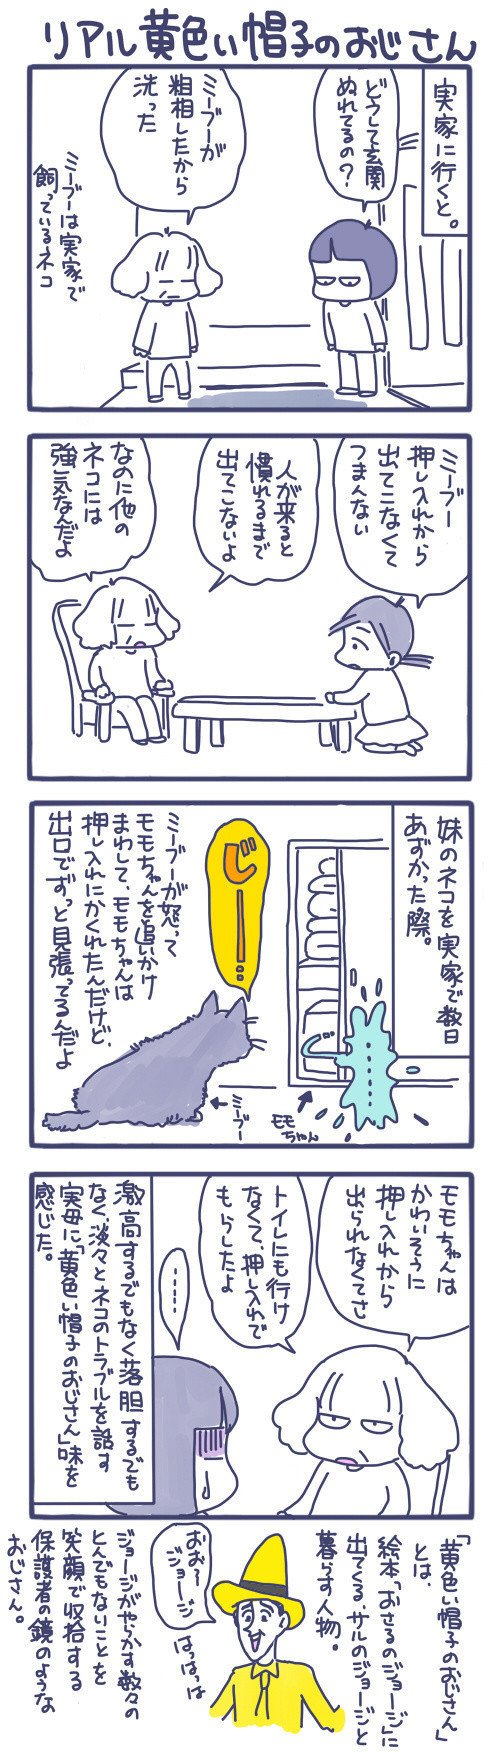 ネコの親の鏡